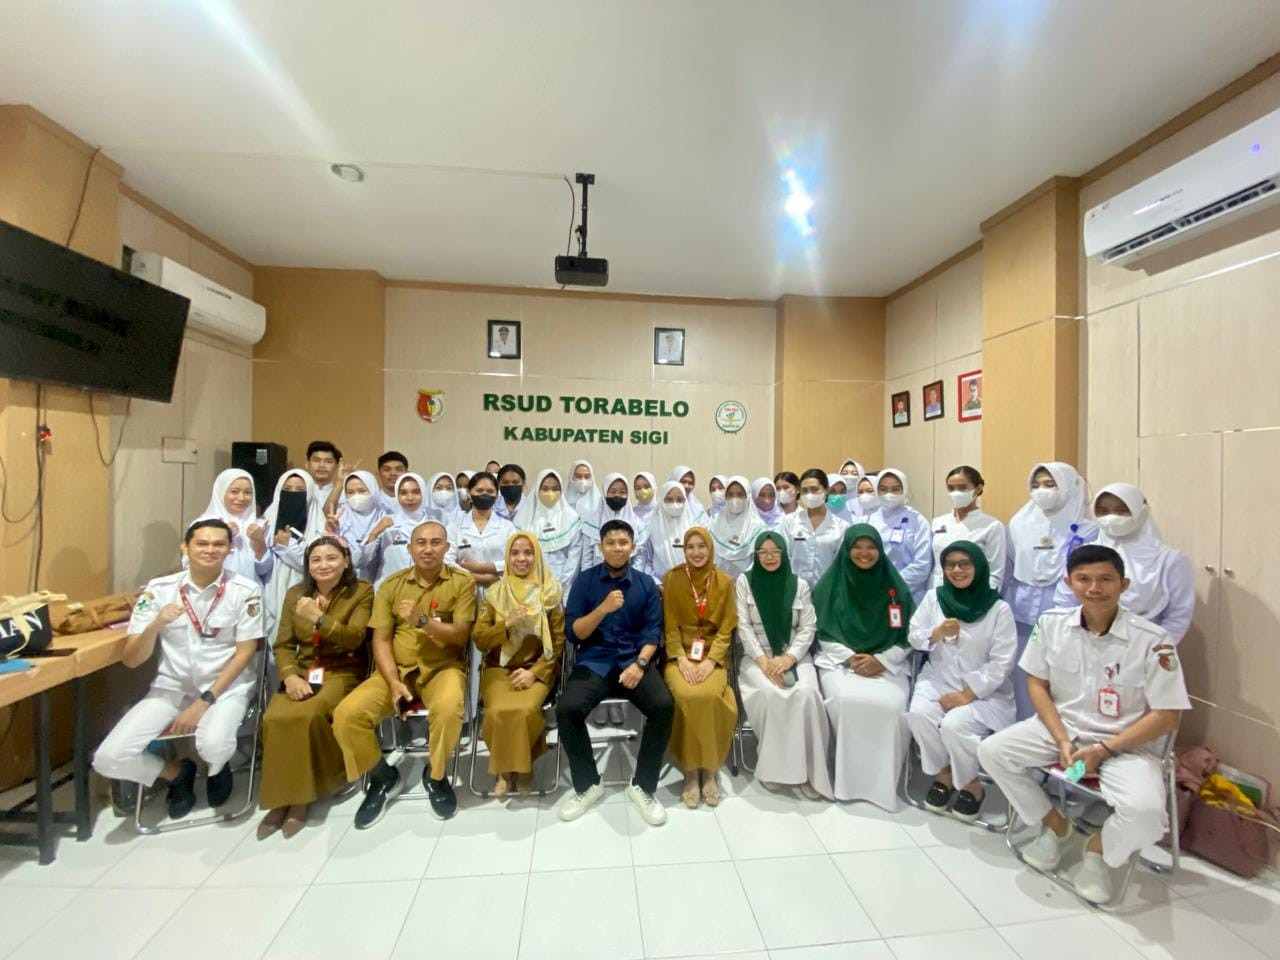 Rumah sakit Tora belo menerima mahasiswa Dari Universitas Widya Nusantara Palu 